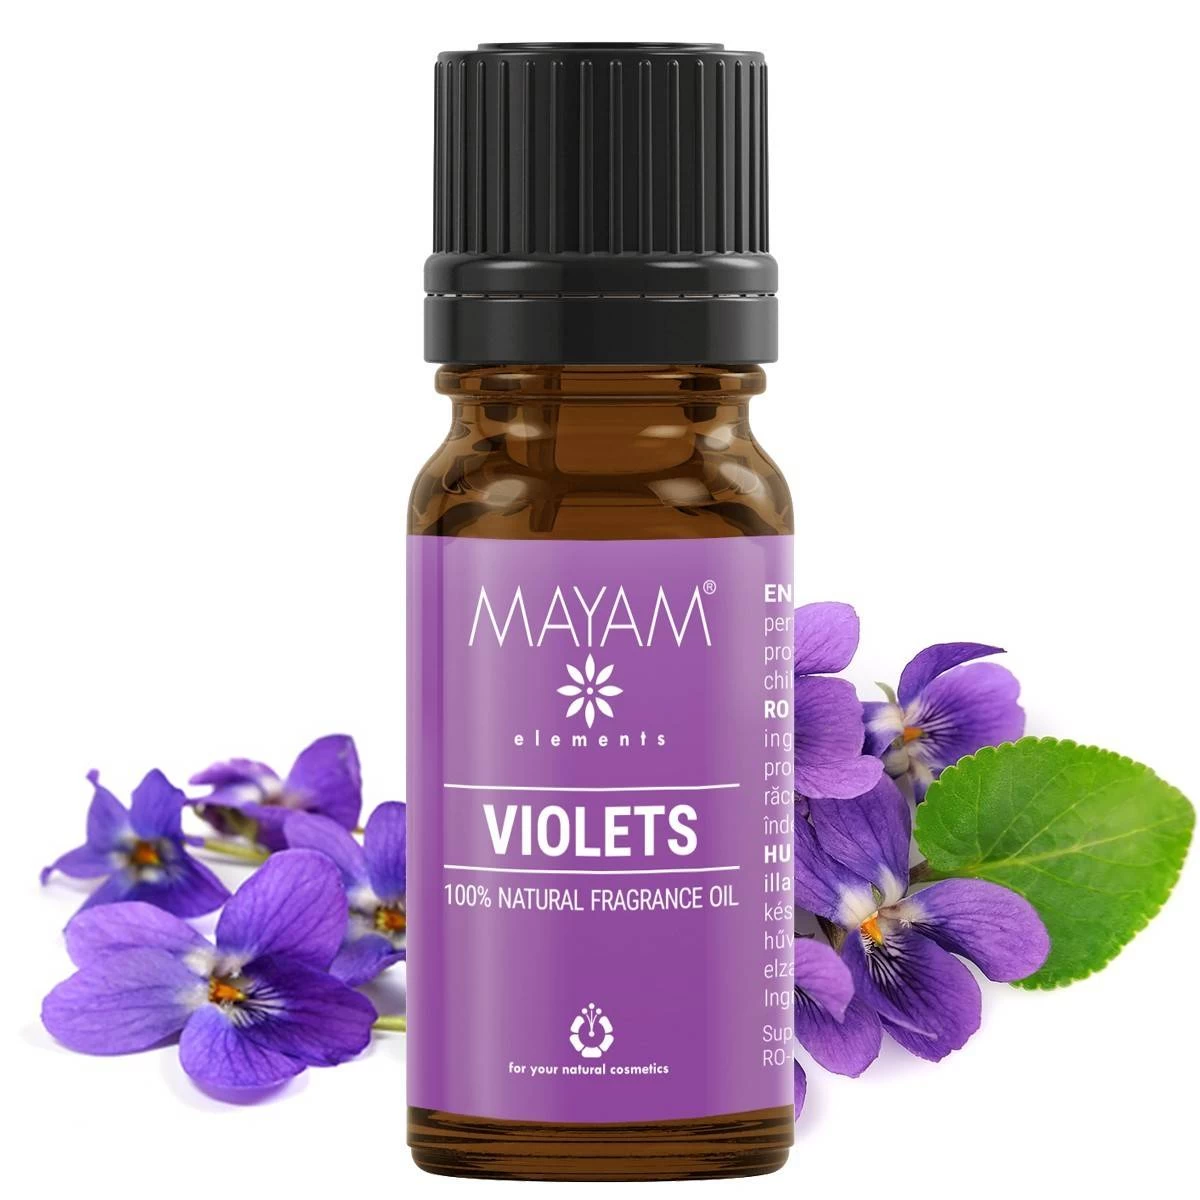 Parfumant natural violets, 10ml - mayam